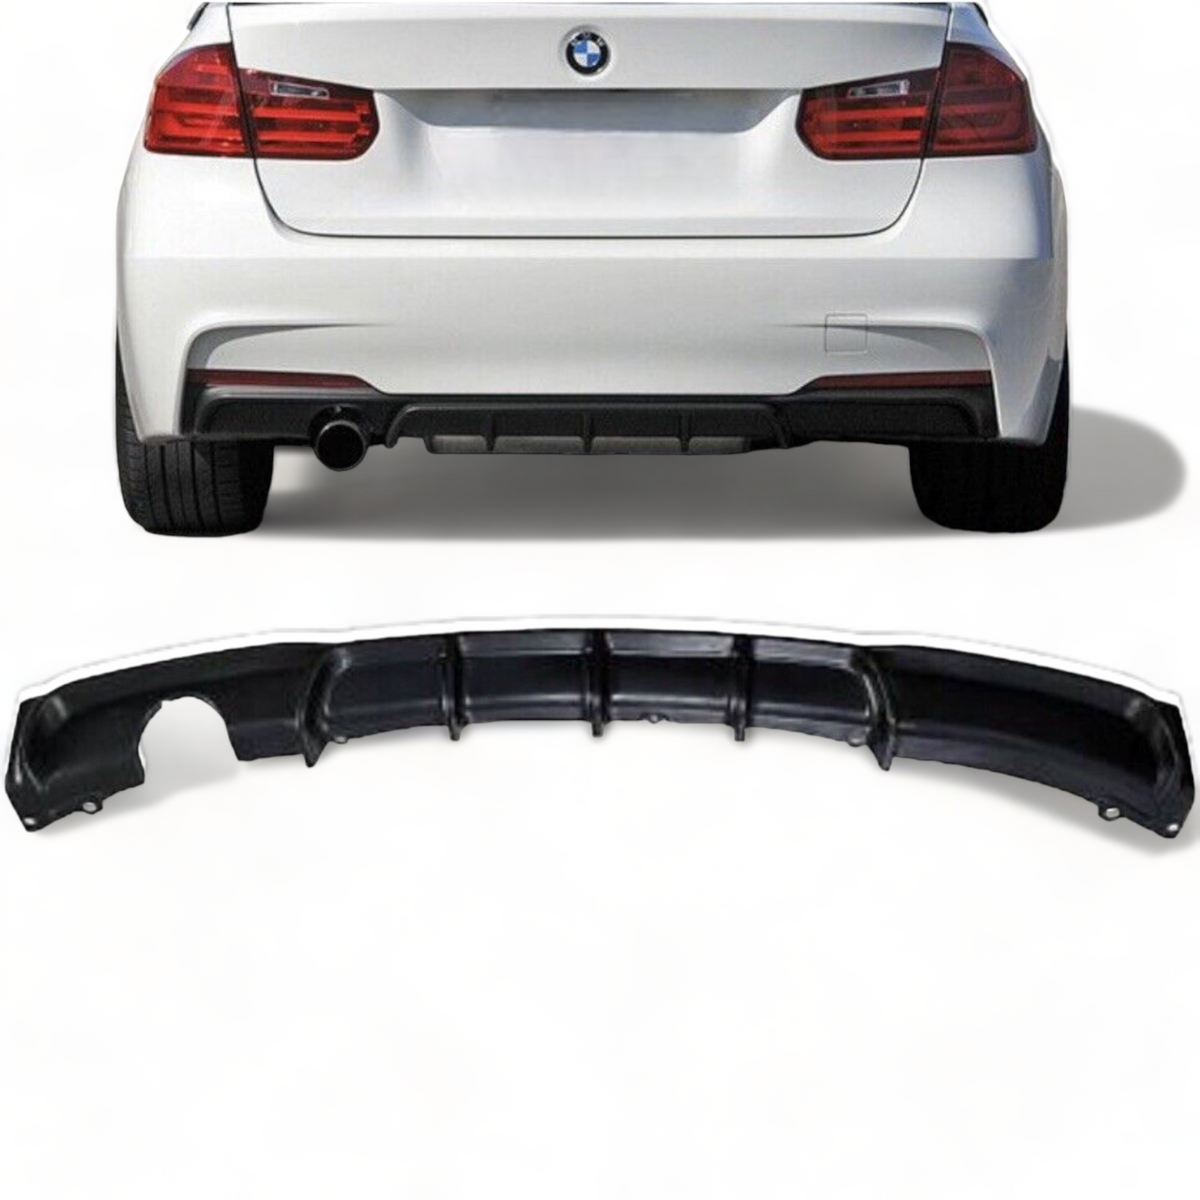 Rear Diffuser - Single Exit - Fits BMW F30 F31 3 Series - M Sport - Gloss Black